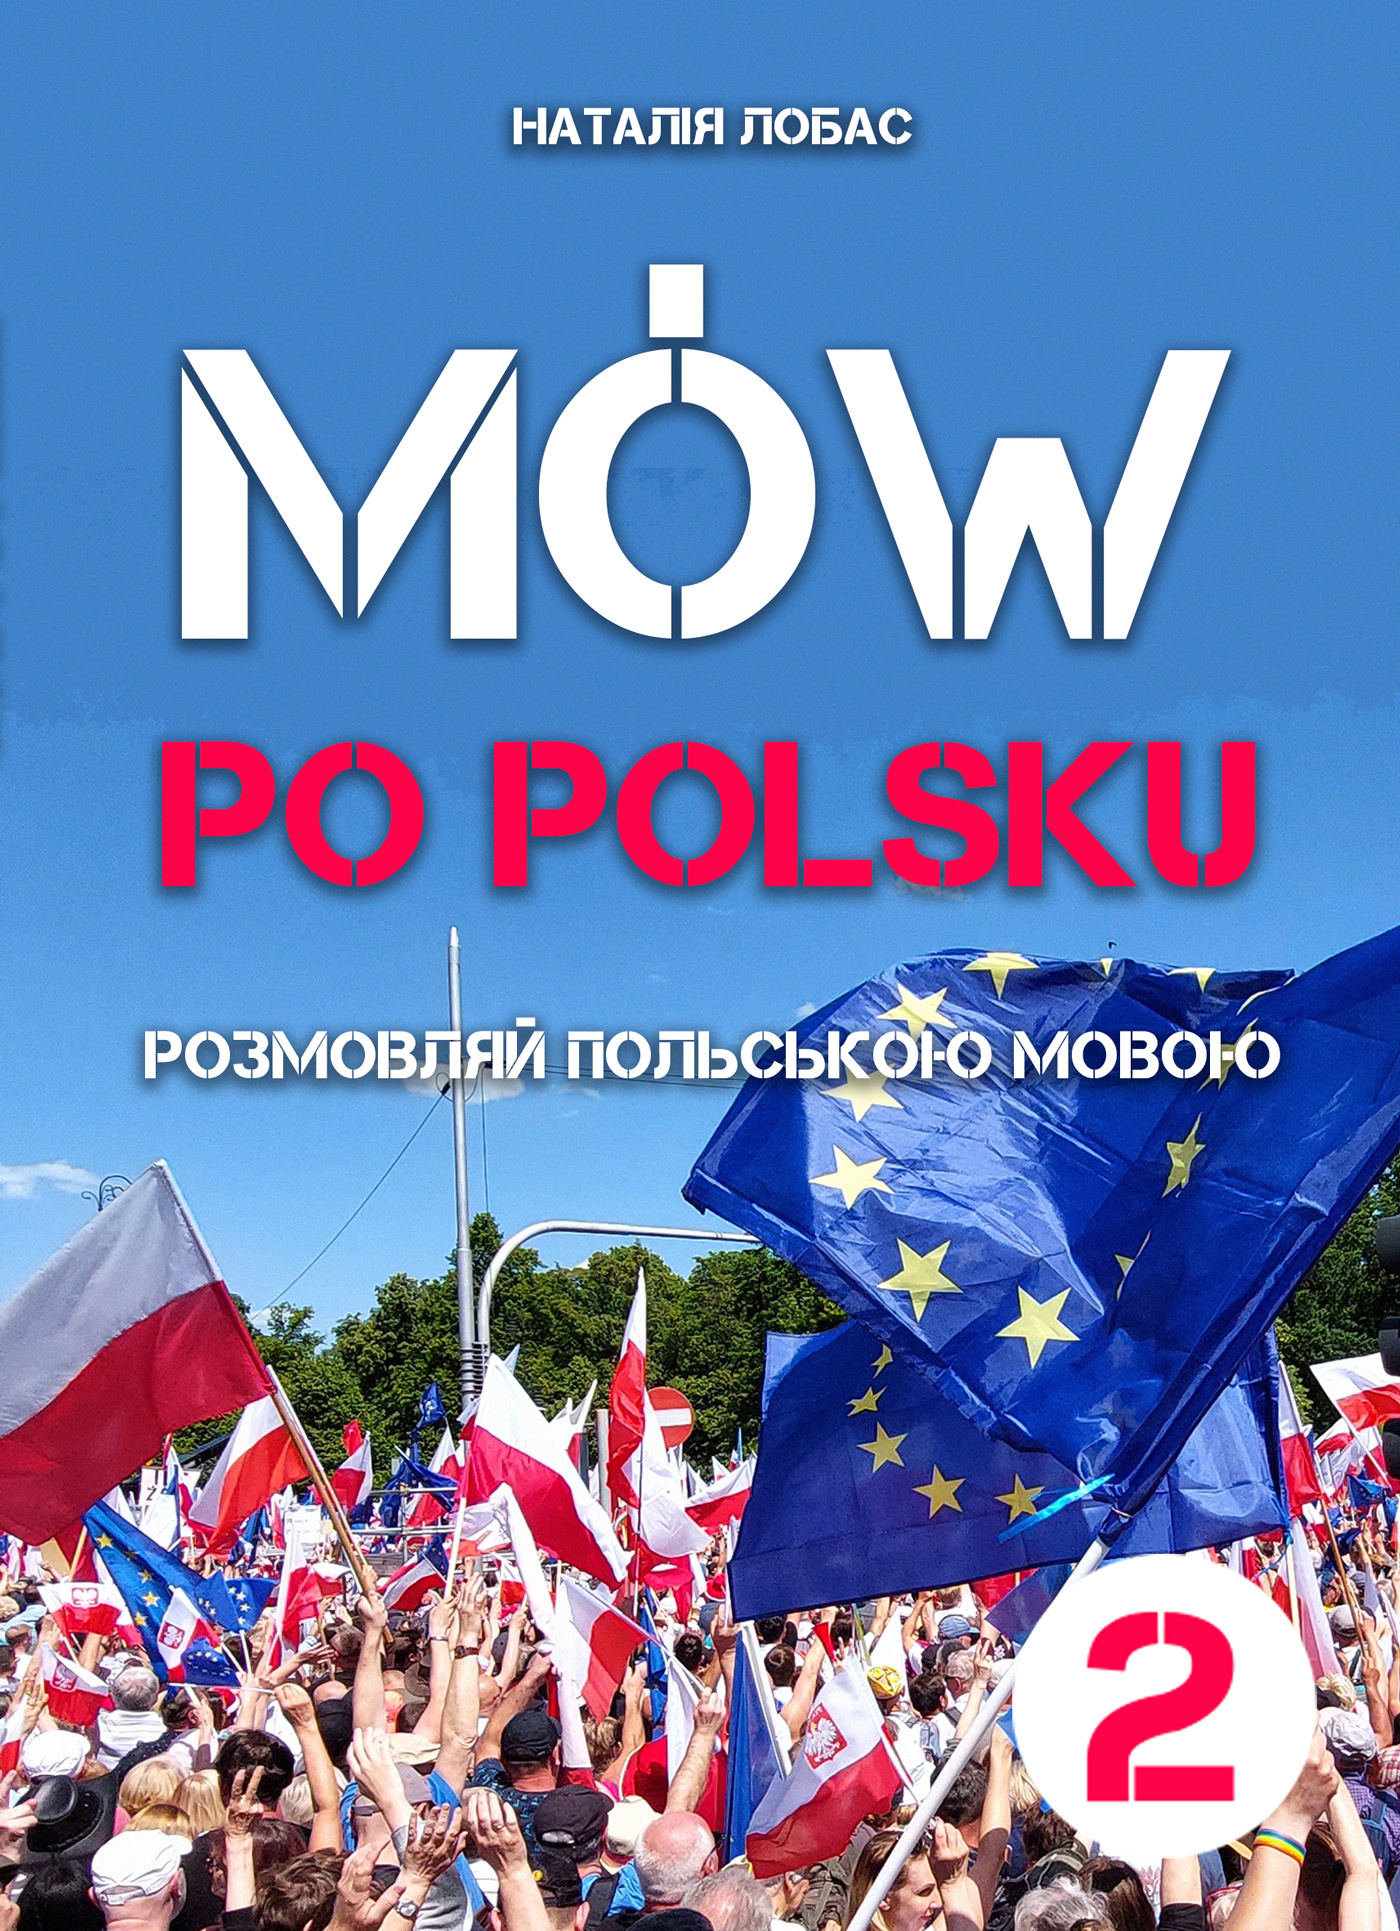 Mów po polsku. Розмовляй польською мовою, 2 том. Автор — Наталя Лобас. 